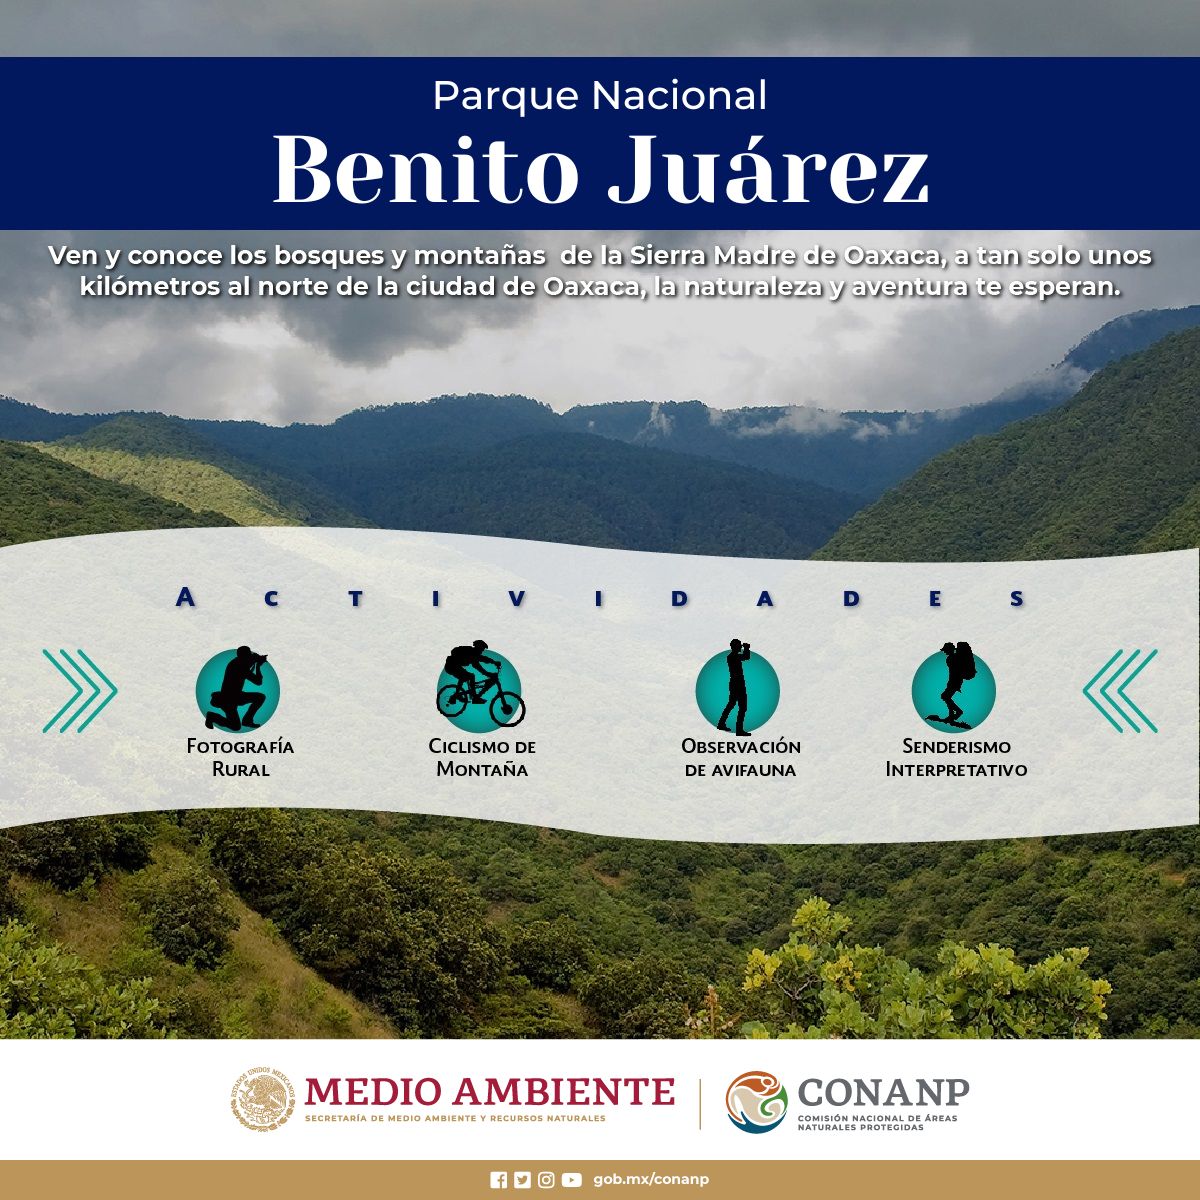 El Parque Nacional #BenitoJuárez conserva impresionantes ecosistemas de la sierra del norte de Oaxaca. 🌄 Es un importante pulmón para esta ciudad y una de sus principales fuentes de agua. 💧 Cuidemos las #ÁreasNaturalesProtegidas. #TurismoResponsable 🫁🌊🌿🌳🐯🐍🐱🦎🐦🐸🦌